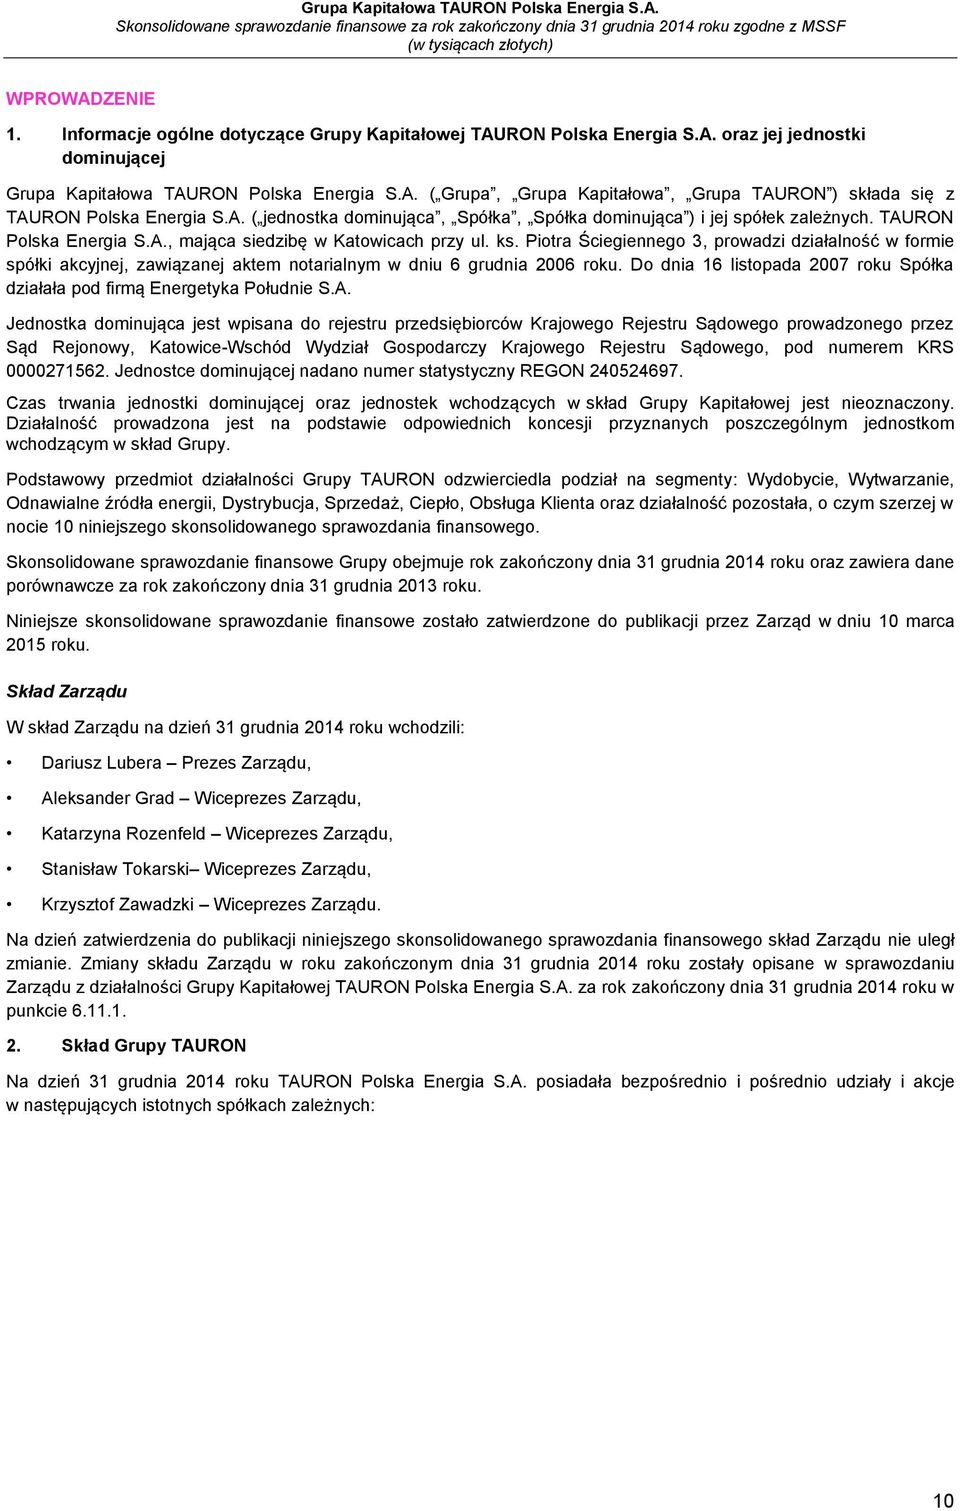 Piotra Ściegiennego 3, prowadzi działalność w formie spółki akcyjnej, zawiązanej aktem notarialnym w dniu 6 grudnia 2006 roku.